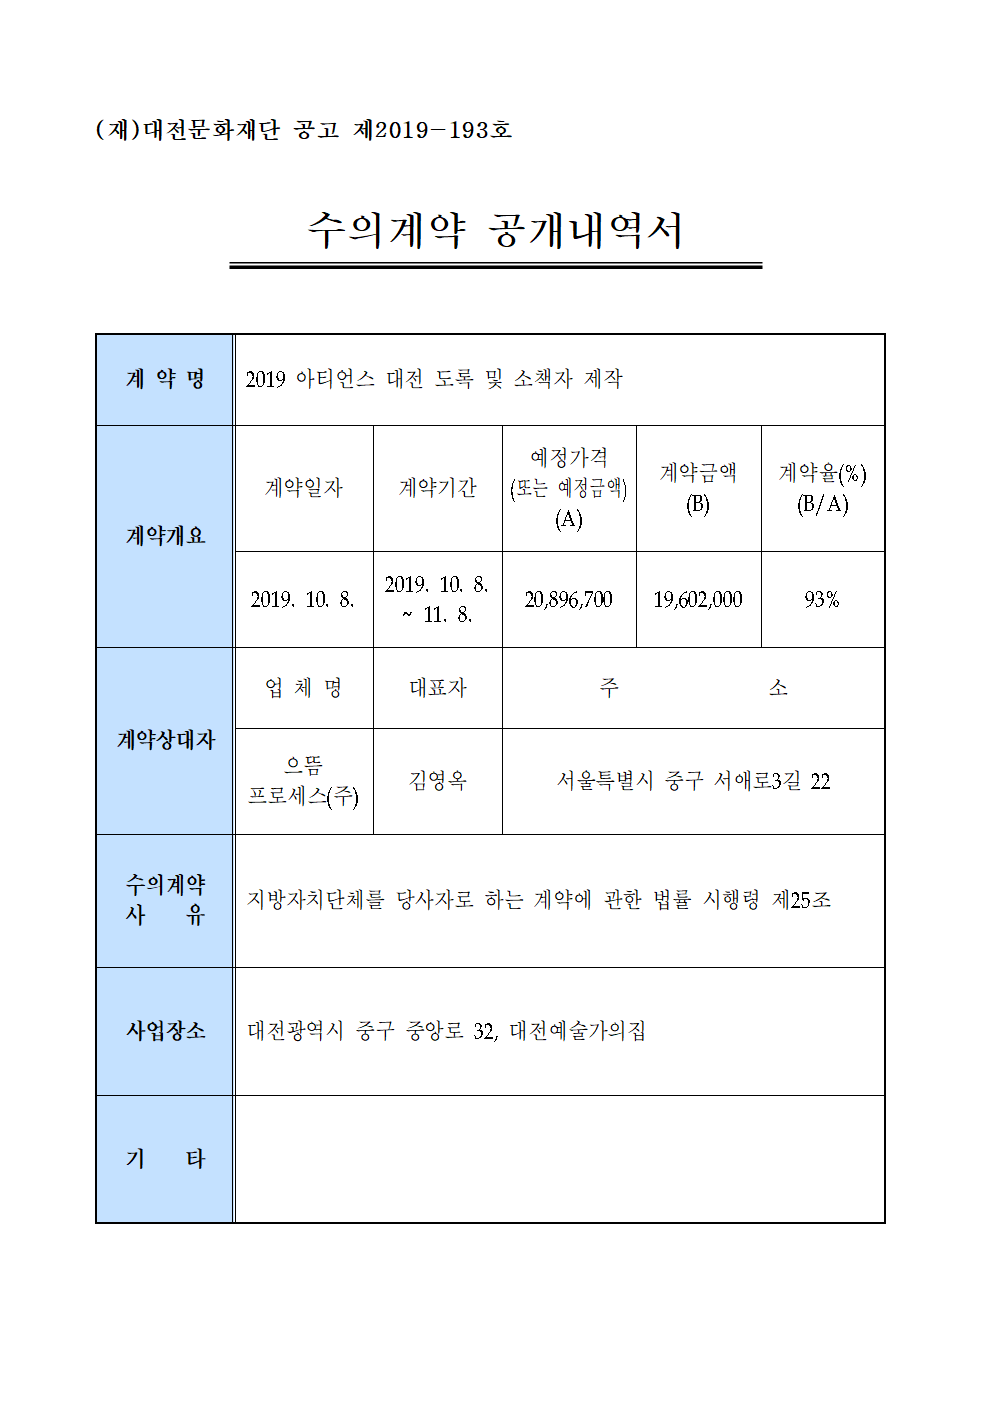 2019 아티언스 대전 도록 및 소책자 제작 용역 수의계약 내역 공개 